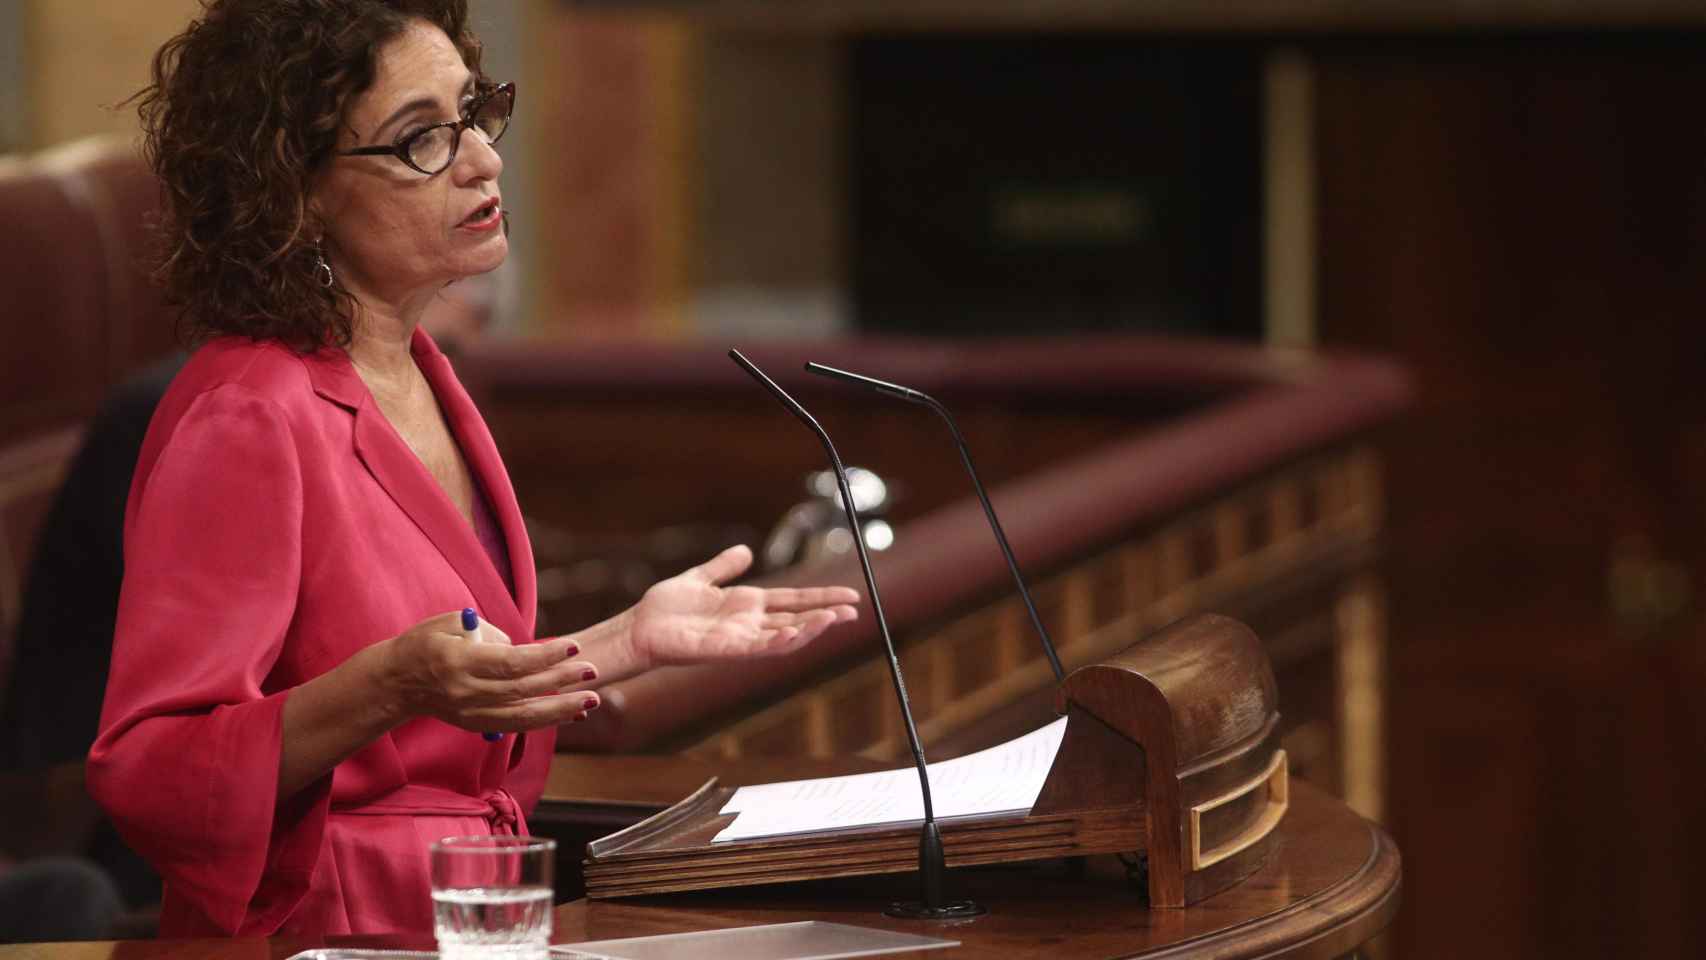 La ministra de Hacienda, María Jesús Montero / EP